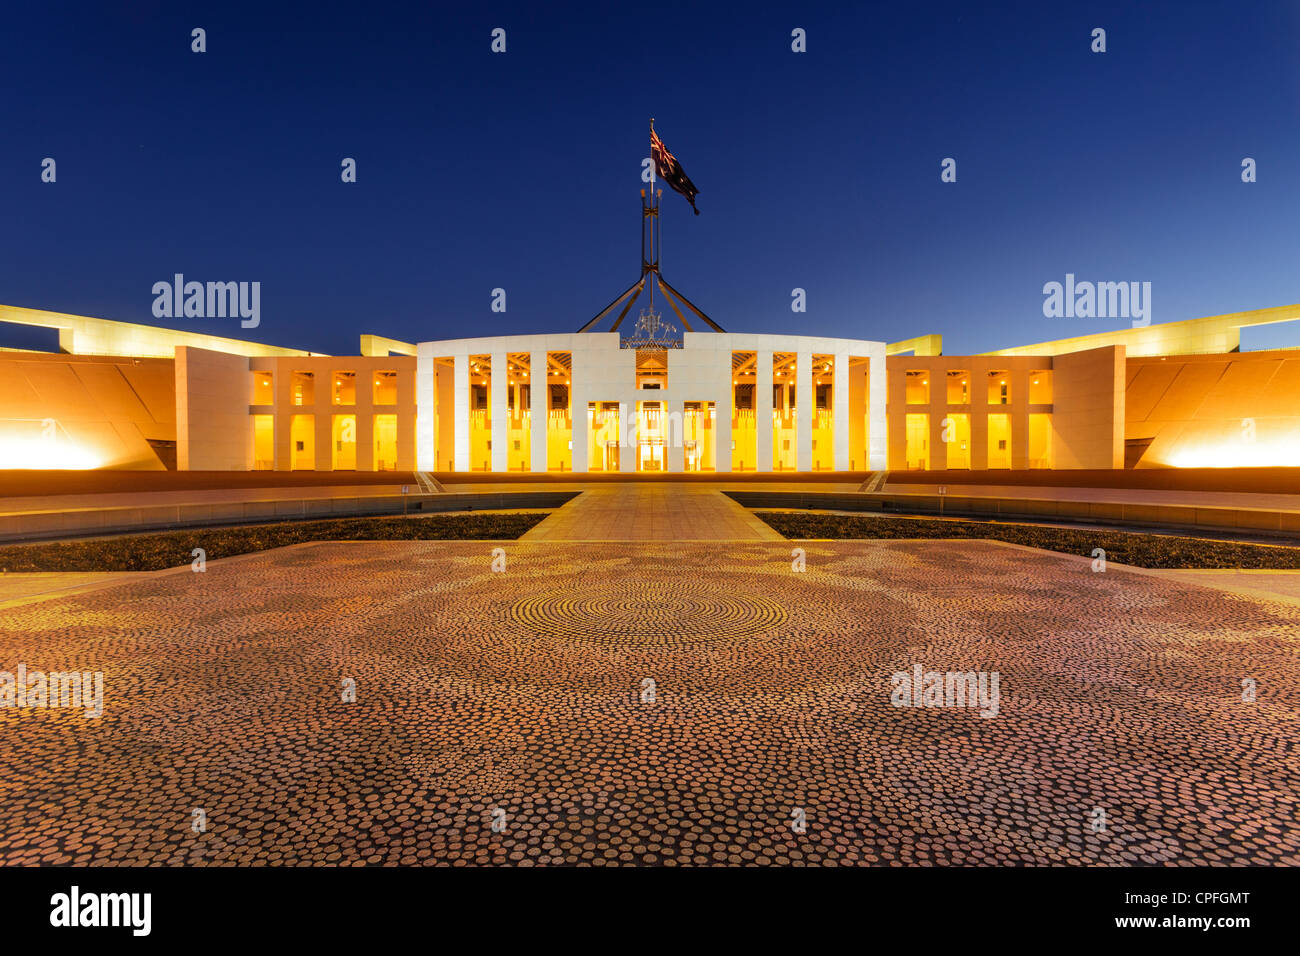 La Casa del Parlamento, Canberra, Australia, illuminato al crepuscolo. Mosaico di aborigeni in primo piano, bandiera australiana è volare. Foto Stock